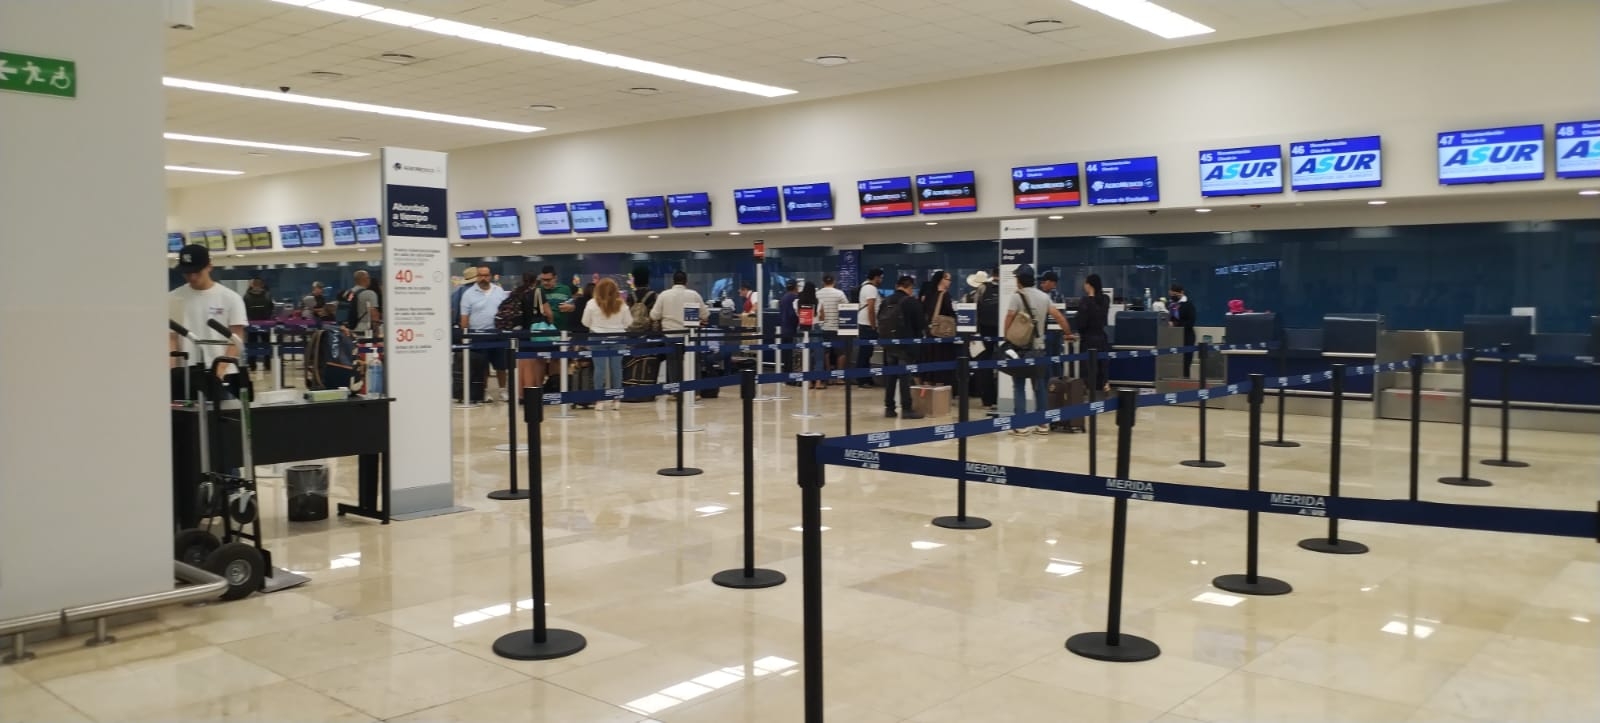 Se registran vuelos retrasados de más de una hora en el aeropuerto de Mérida